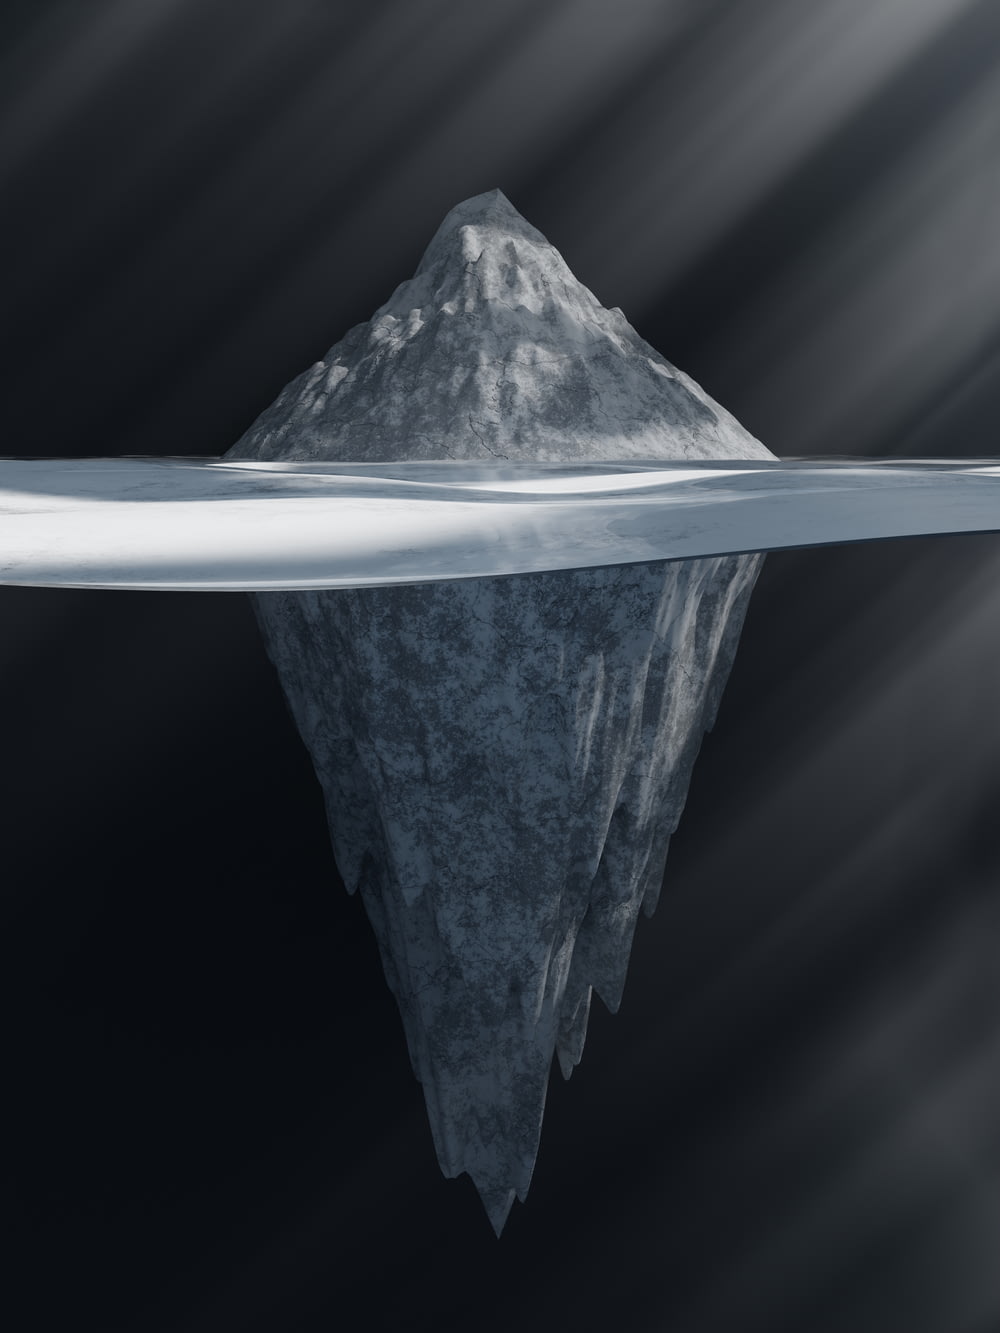 um grande iceberg flutuando no meio de um corpo de água